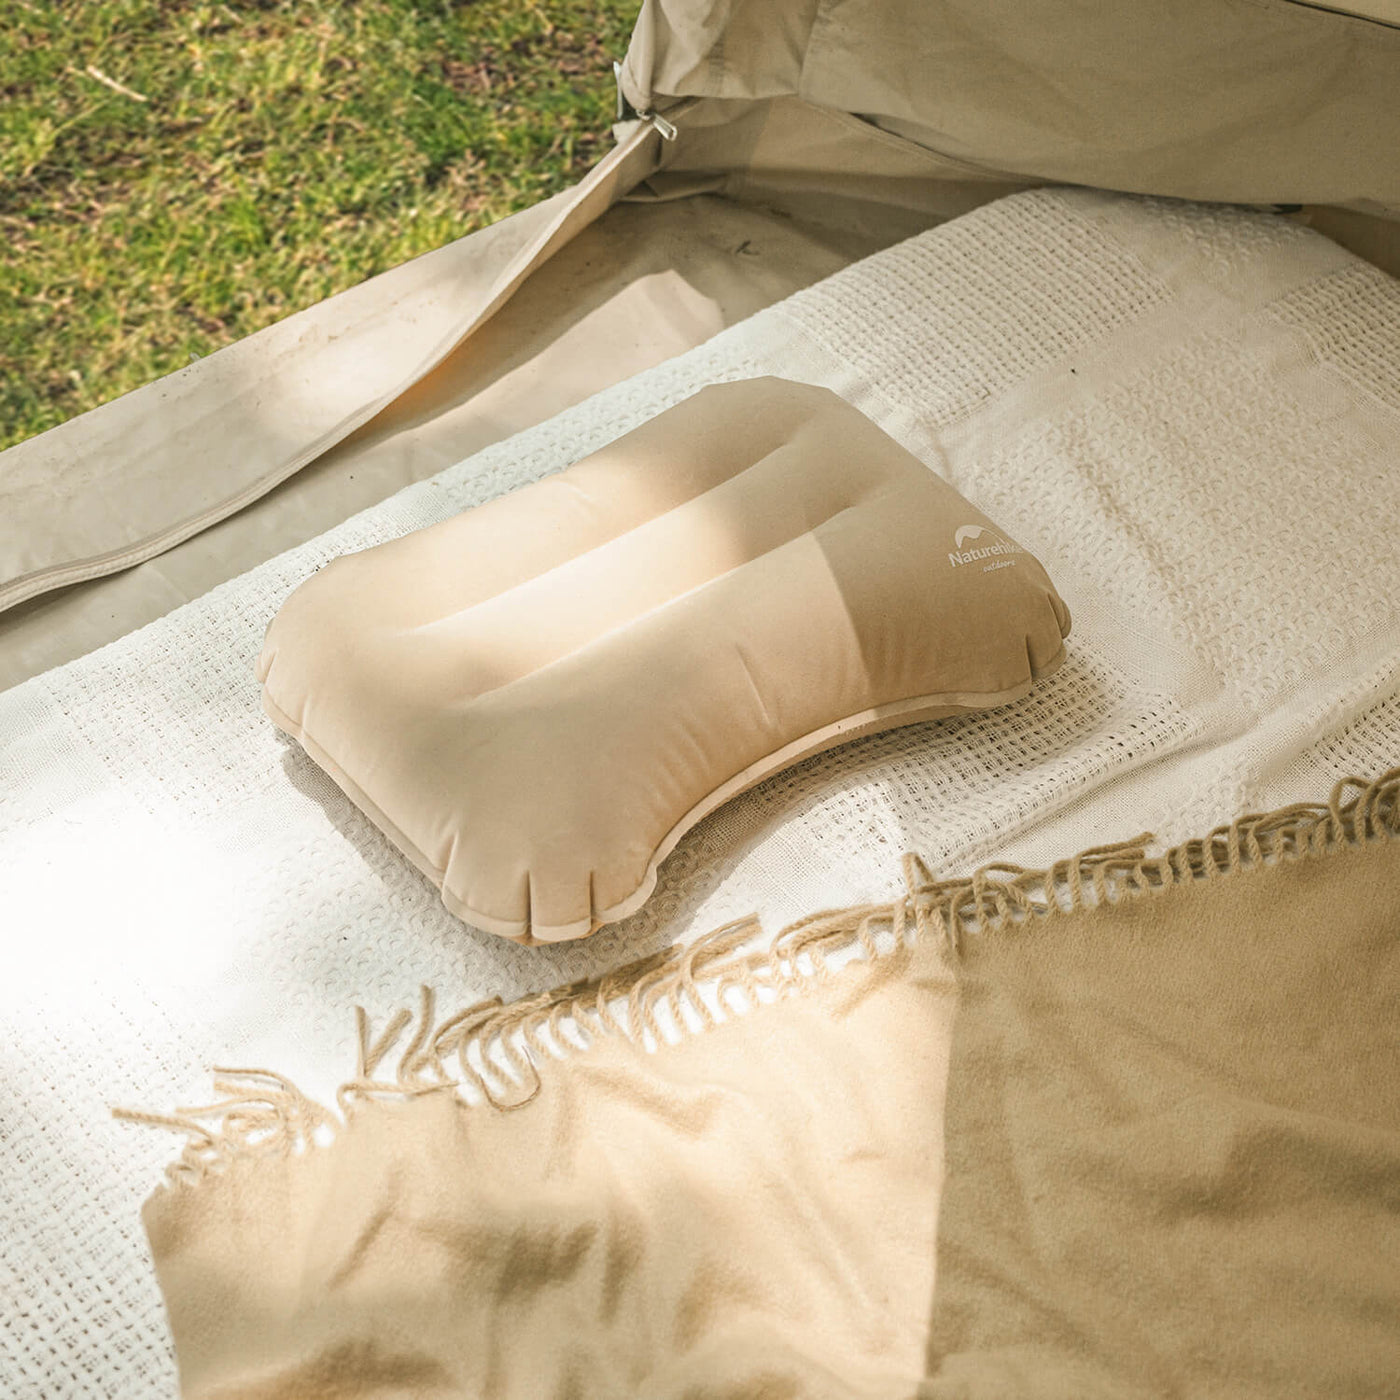 Comfortable camping pillow